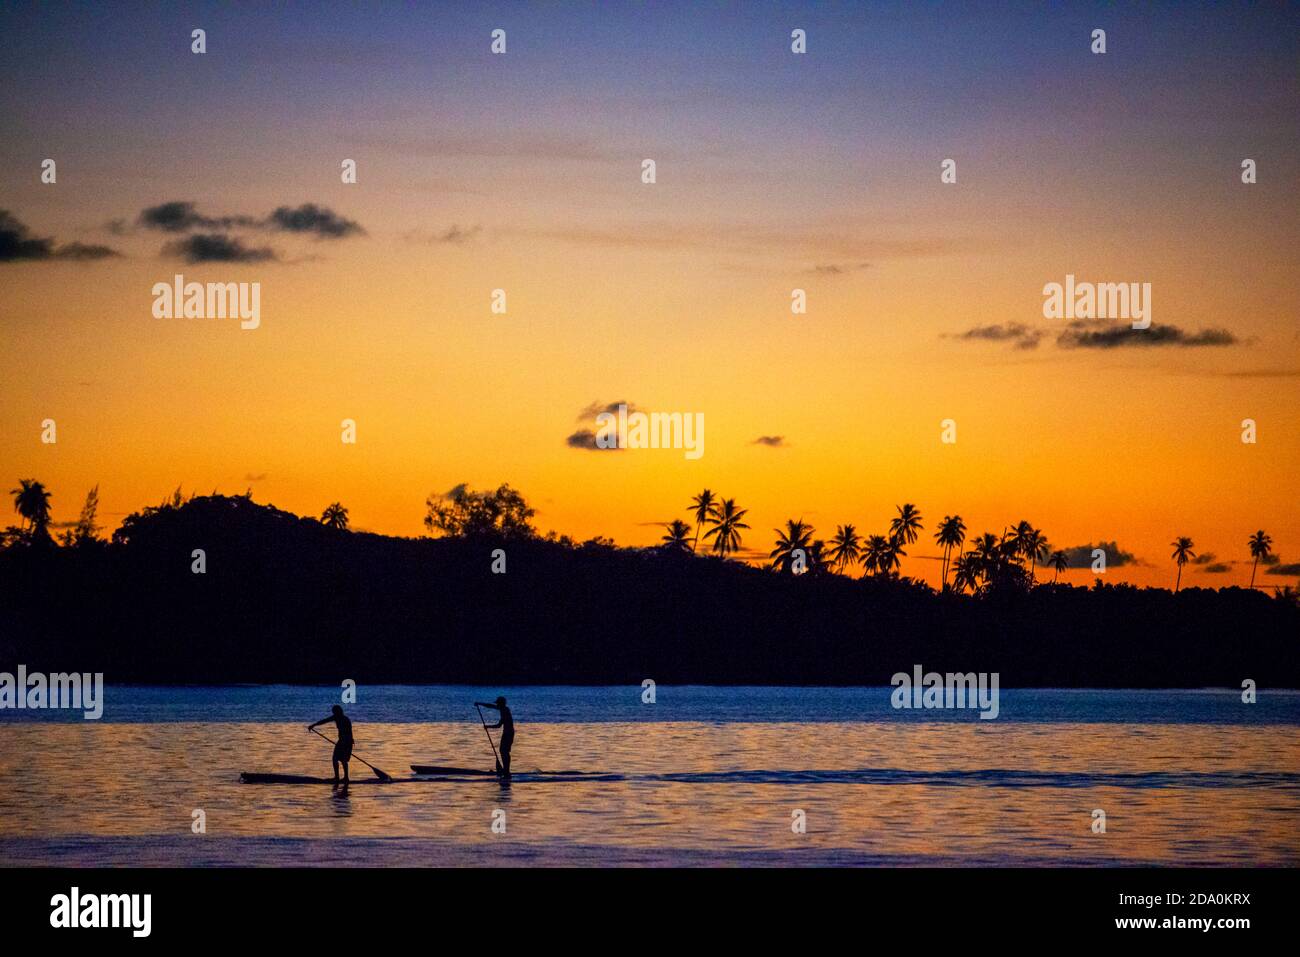 Rudern bei Sonnenuntergang in Französisch-Polynesien, Tahiti Nui, Gesellschaftsinseln, Französisch-Polynesien, Tahiti, Südsee. Stockfoto